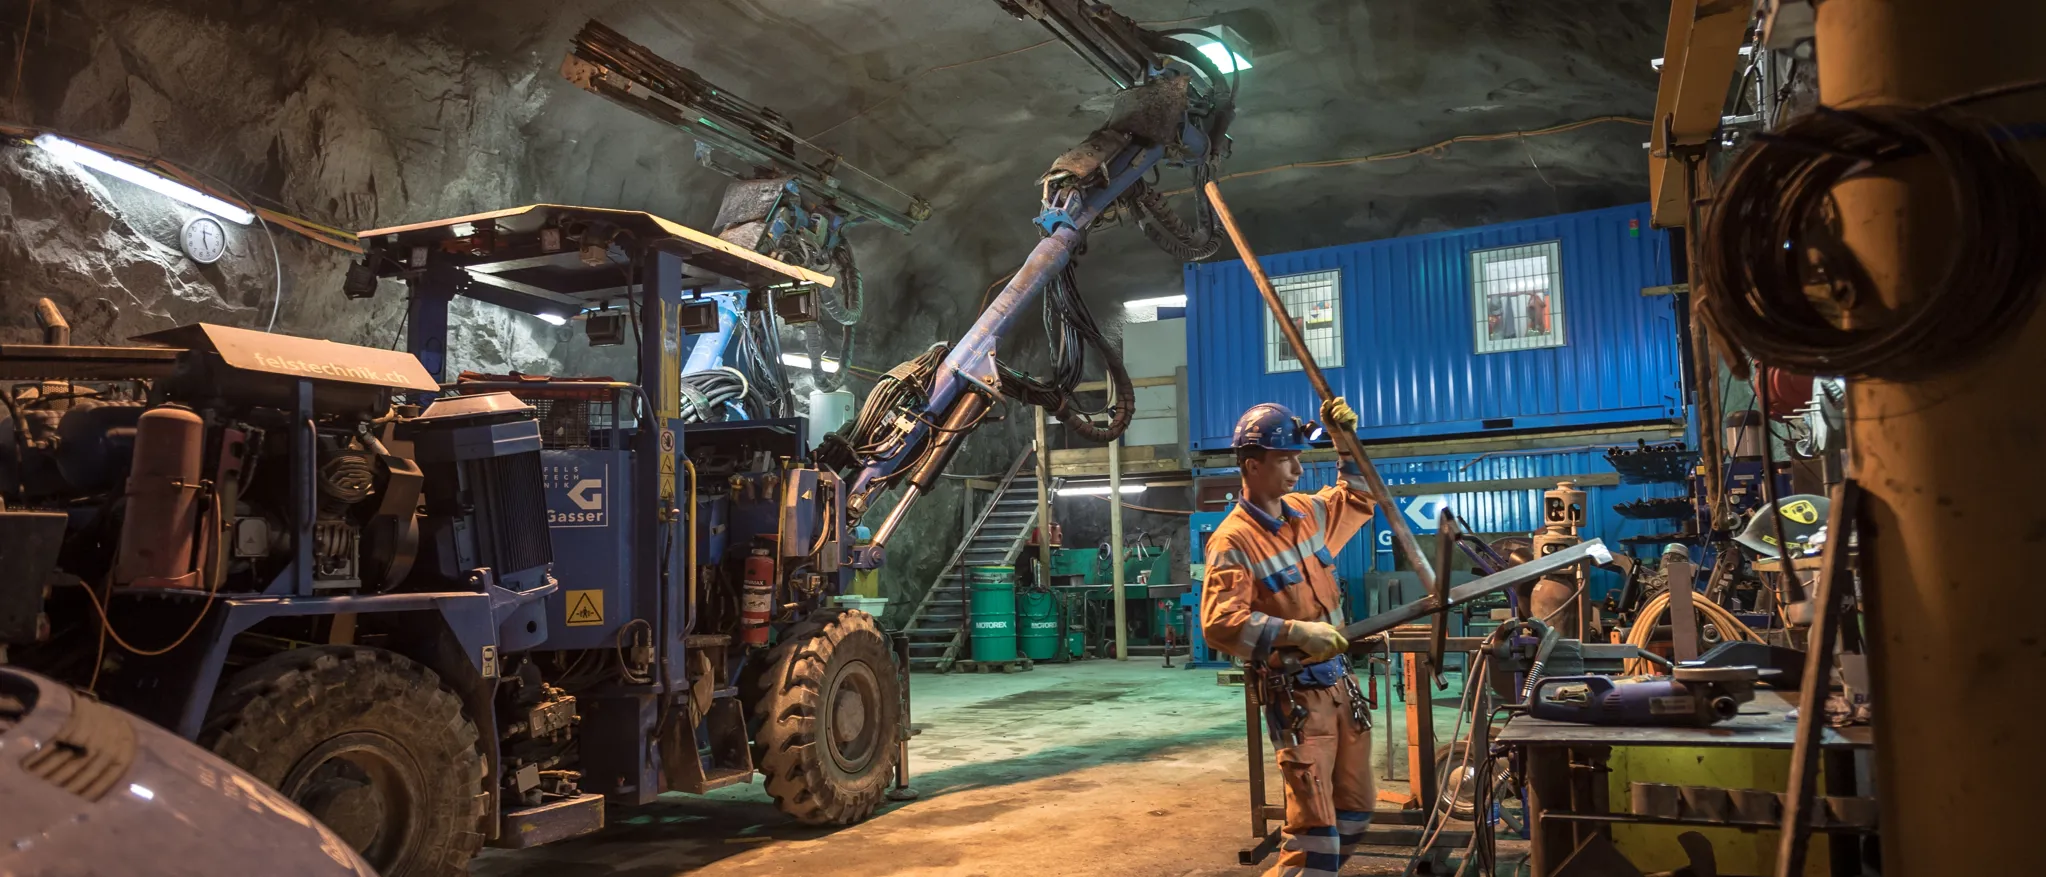 Ouvriers manipulant des machines et des véhicules dans un atelier souterrain éclairé